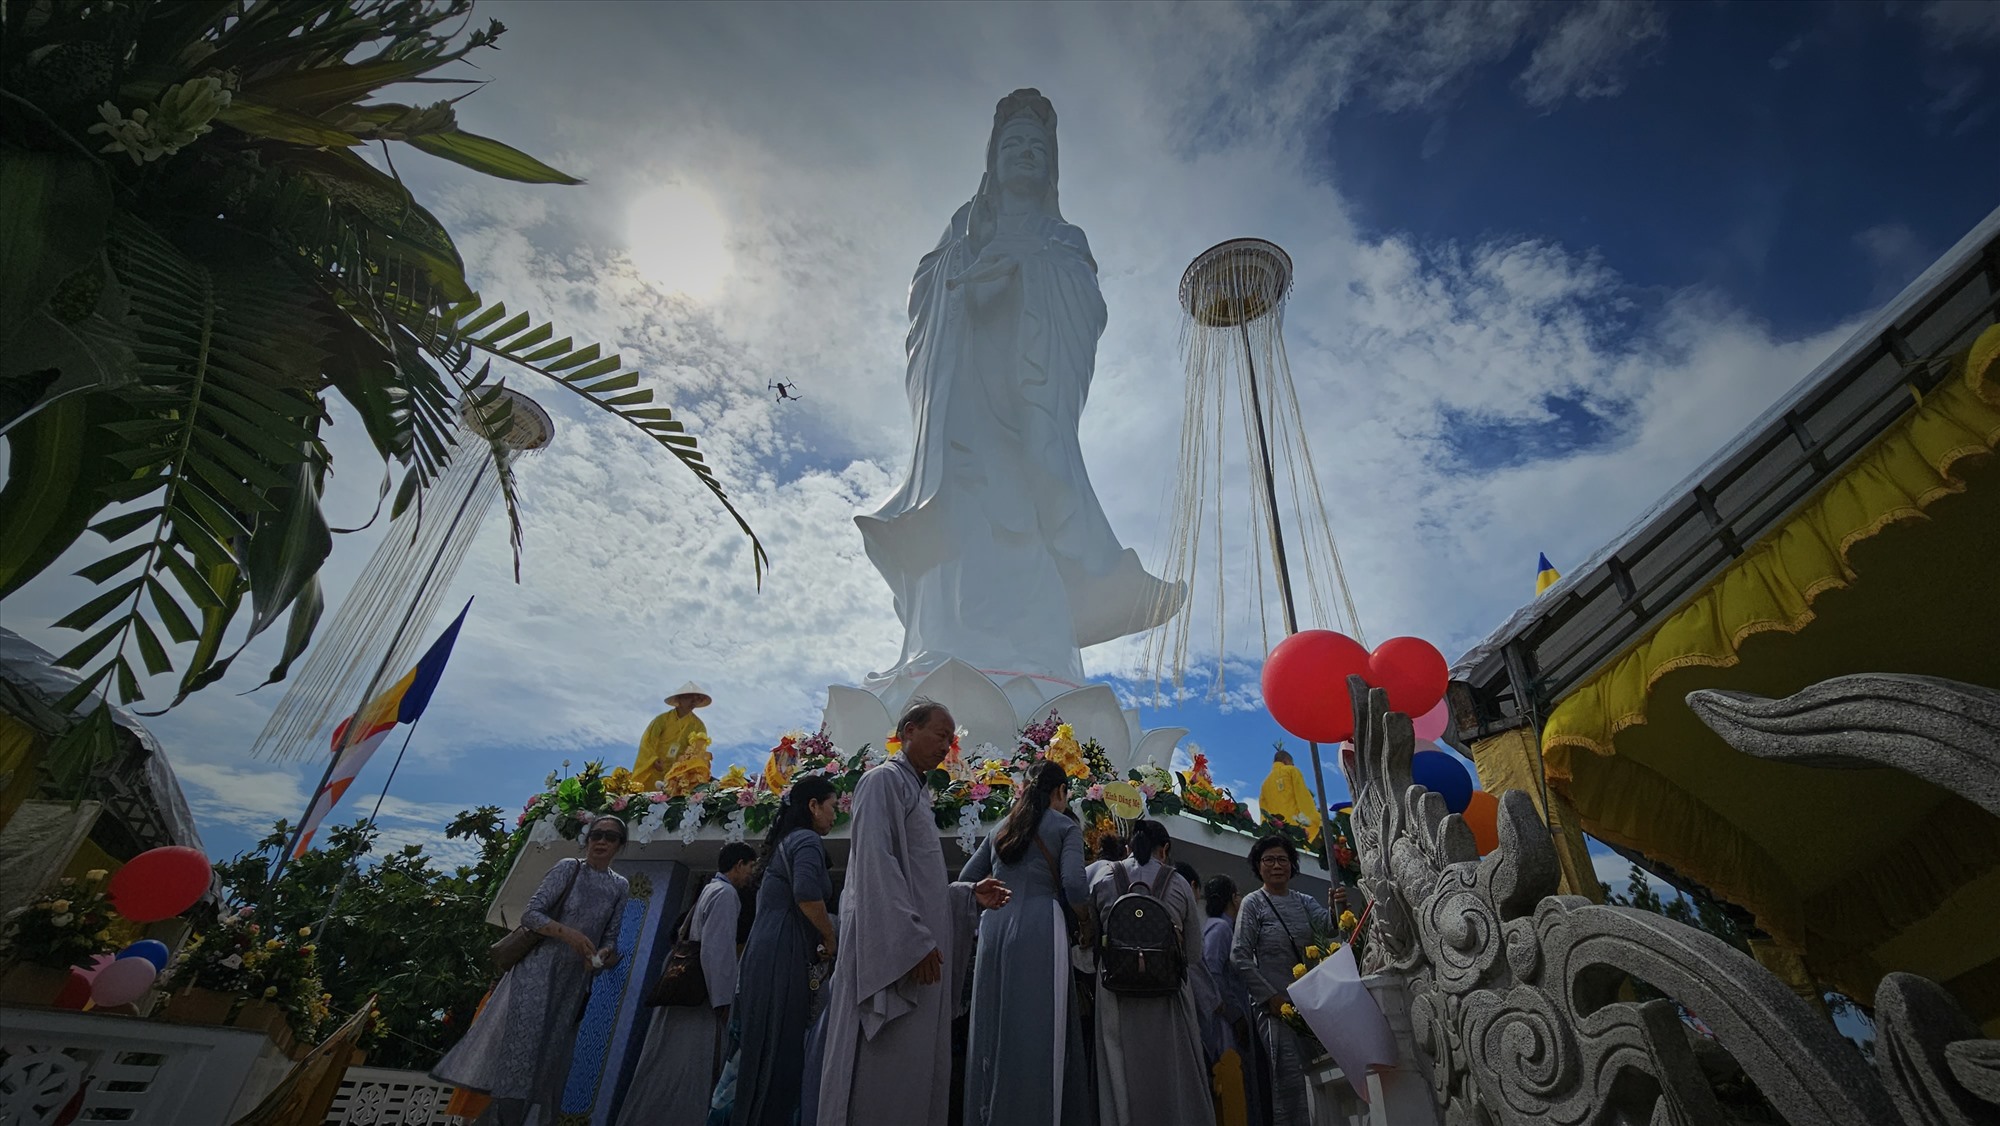 Như mọi năm, trong hai ngày diễn ra Lễ hội đã thu hút hàng ngàn đồng bào Phật tử từ mọi miền quy tụ về dâng hương, nguyện cầu dưới bóng mát của đức Đại từ Đại bi Quán Thế Âm Bồ tát. 